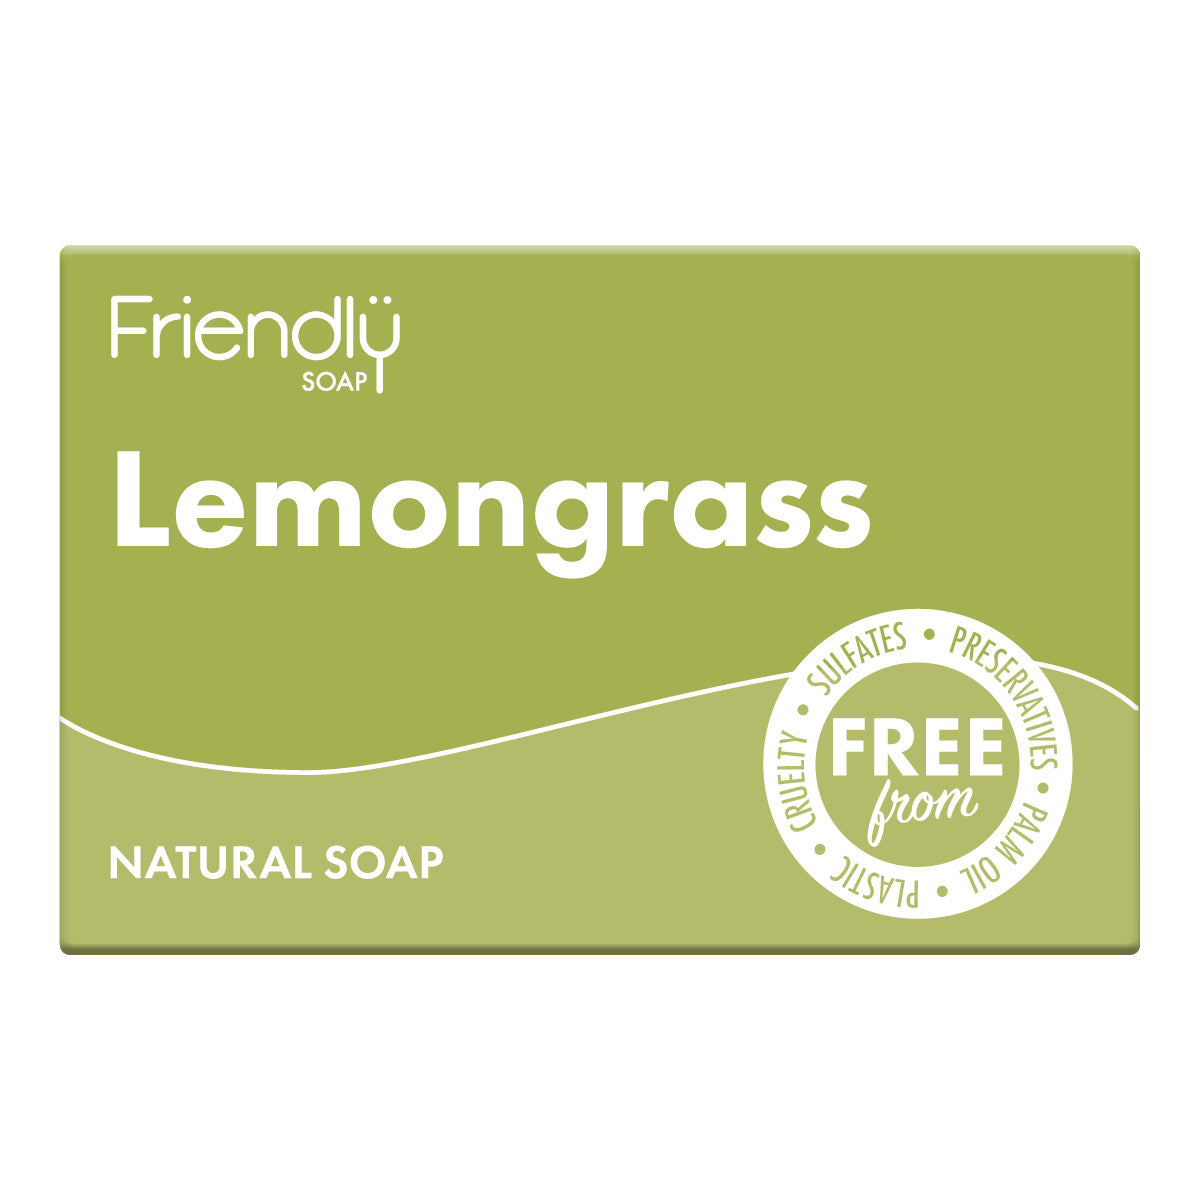 12 Pack - Natural Soap - Lemongrass